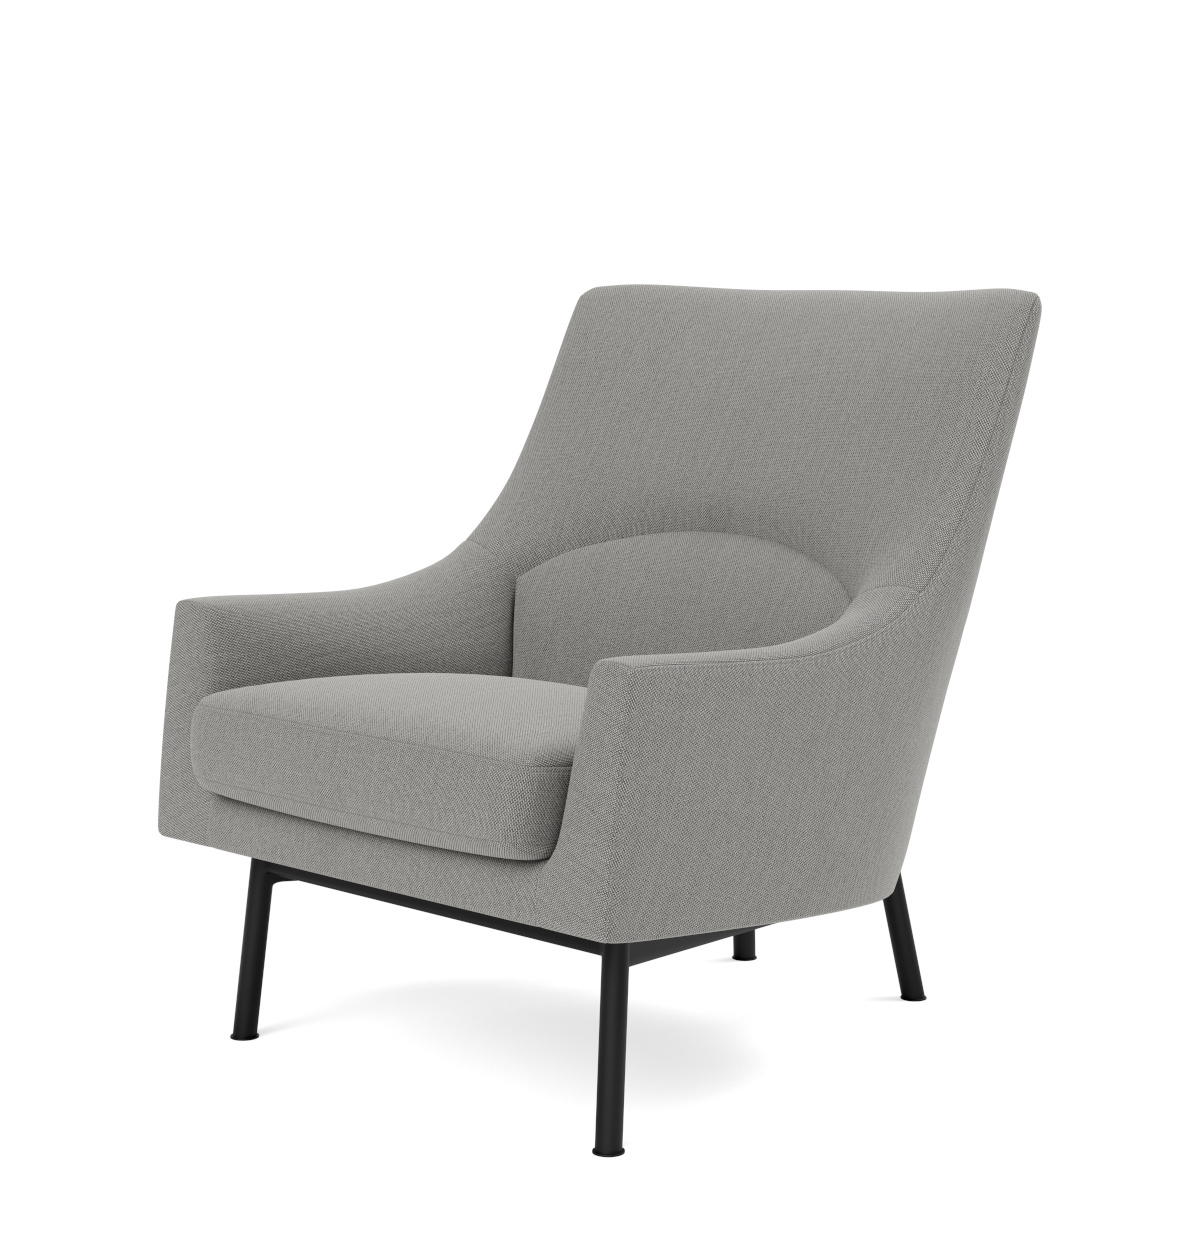 A-Chair Metal Base, schwarz / re-wool 198